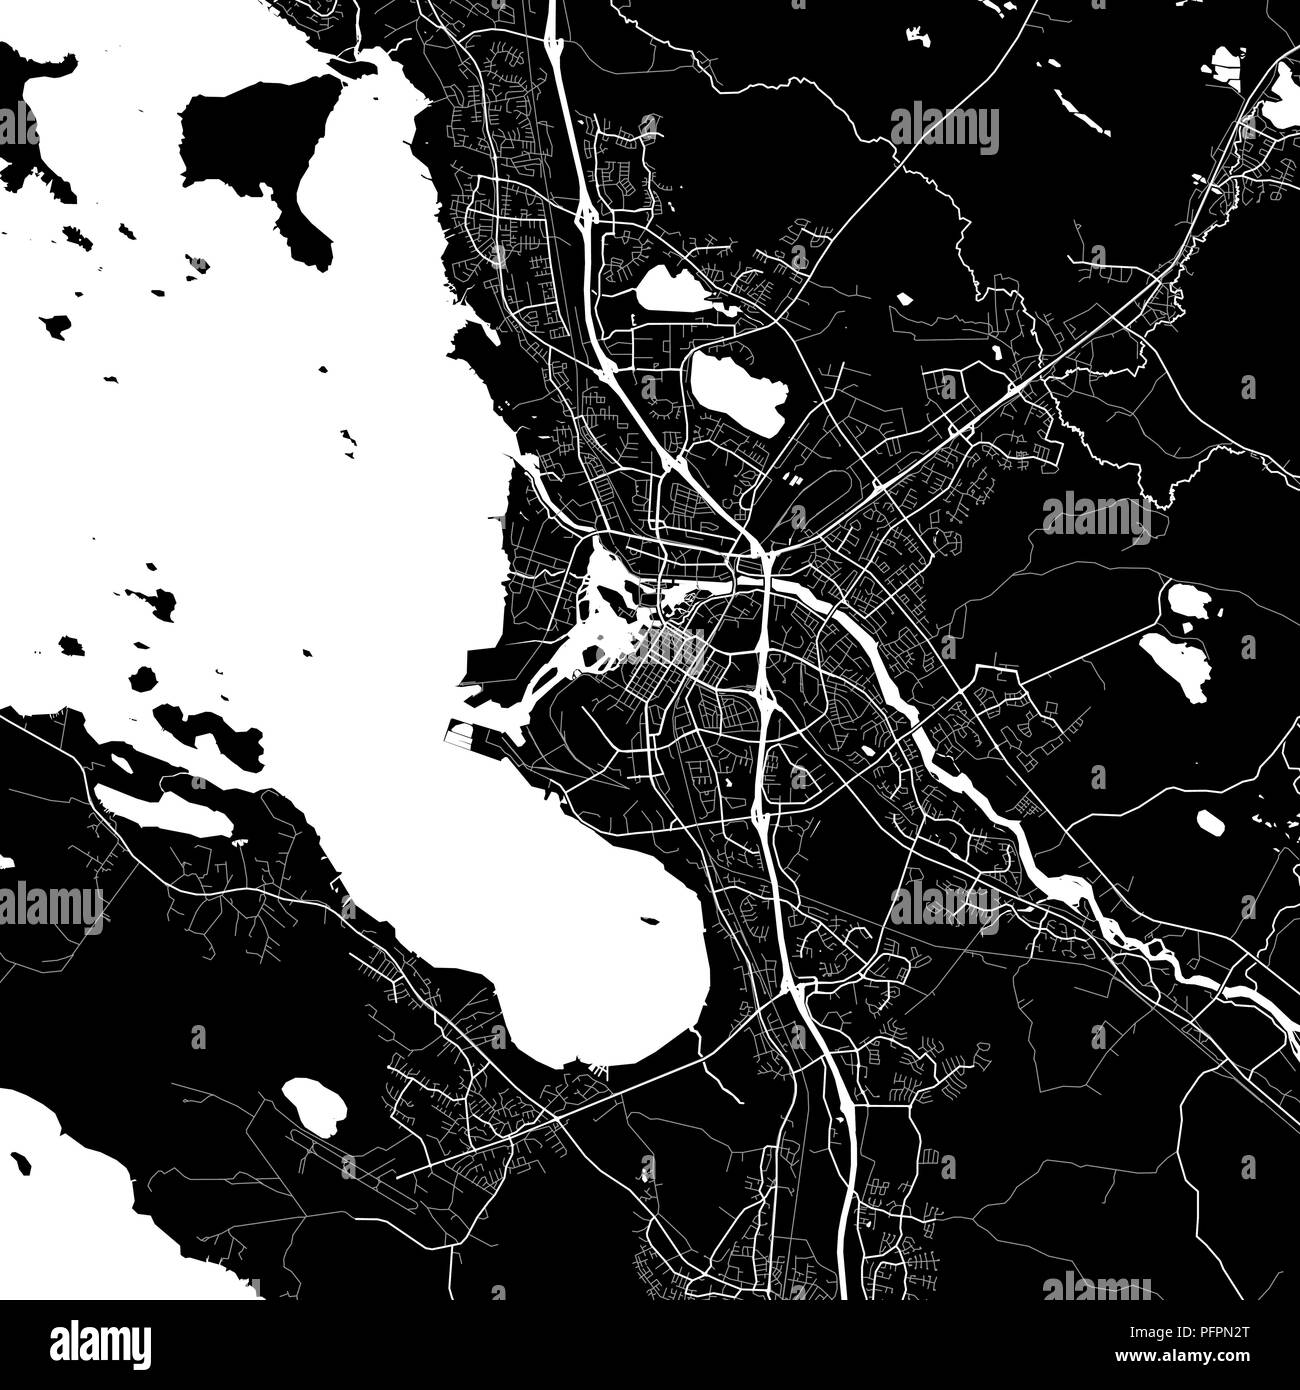 Lageplan von Oulu, Finnland. Der dunkle Hintergrund Version für Infografik und Marketing Projekte. Diese Karte von Oulu, enthält typische Sehenswürdigkeiten mit Straßen, Stock Vektor